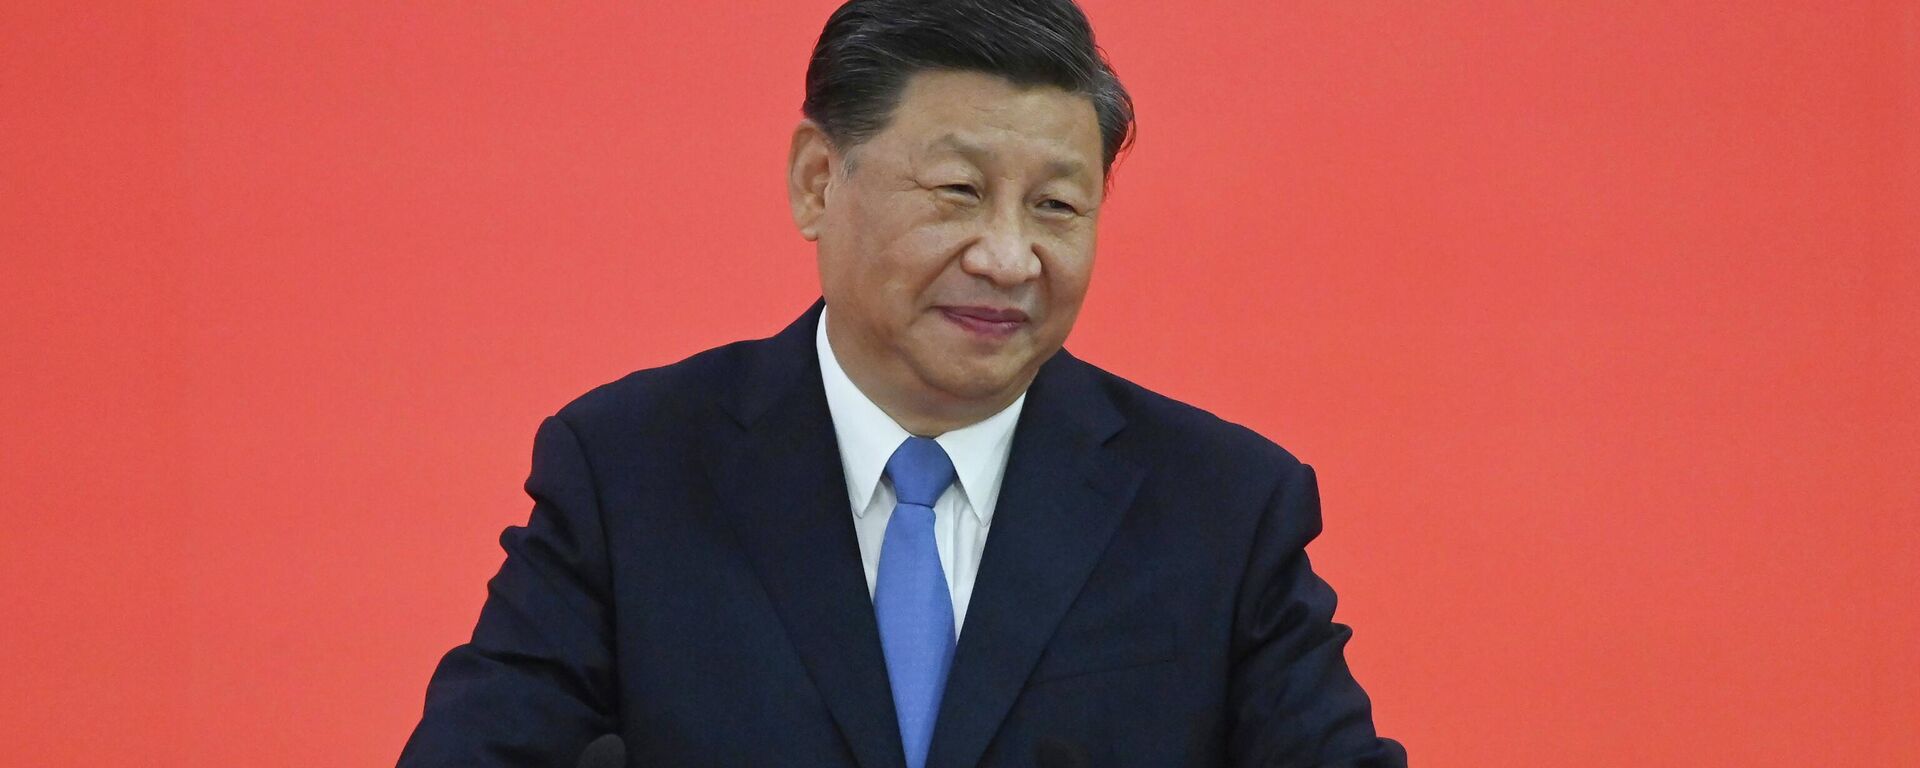 O presidente da China, Xi Jinping, discursa durante visita a Hong Kong, em 30 de junho de 2022 (foto de arquivo) - Sputnik Brasil, 1920, 23.01.2023